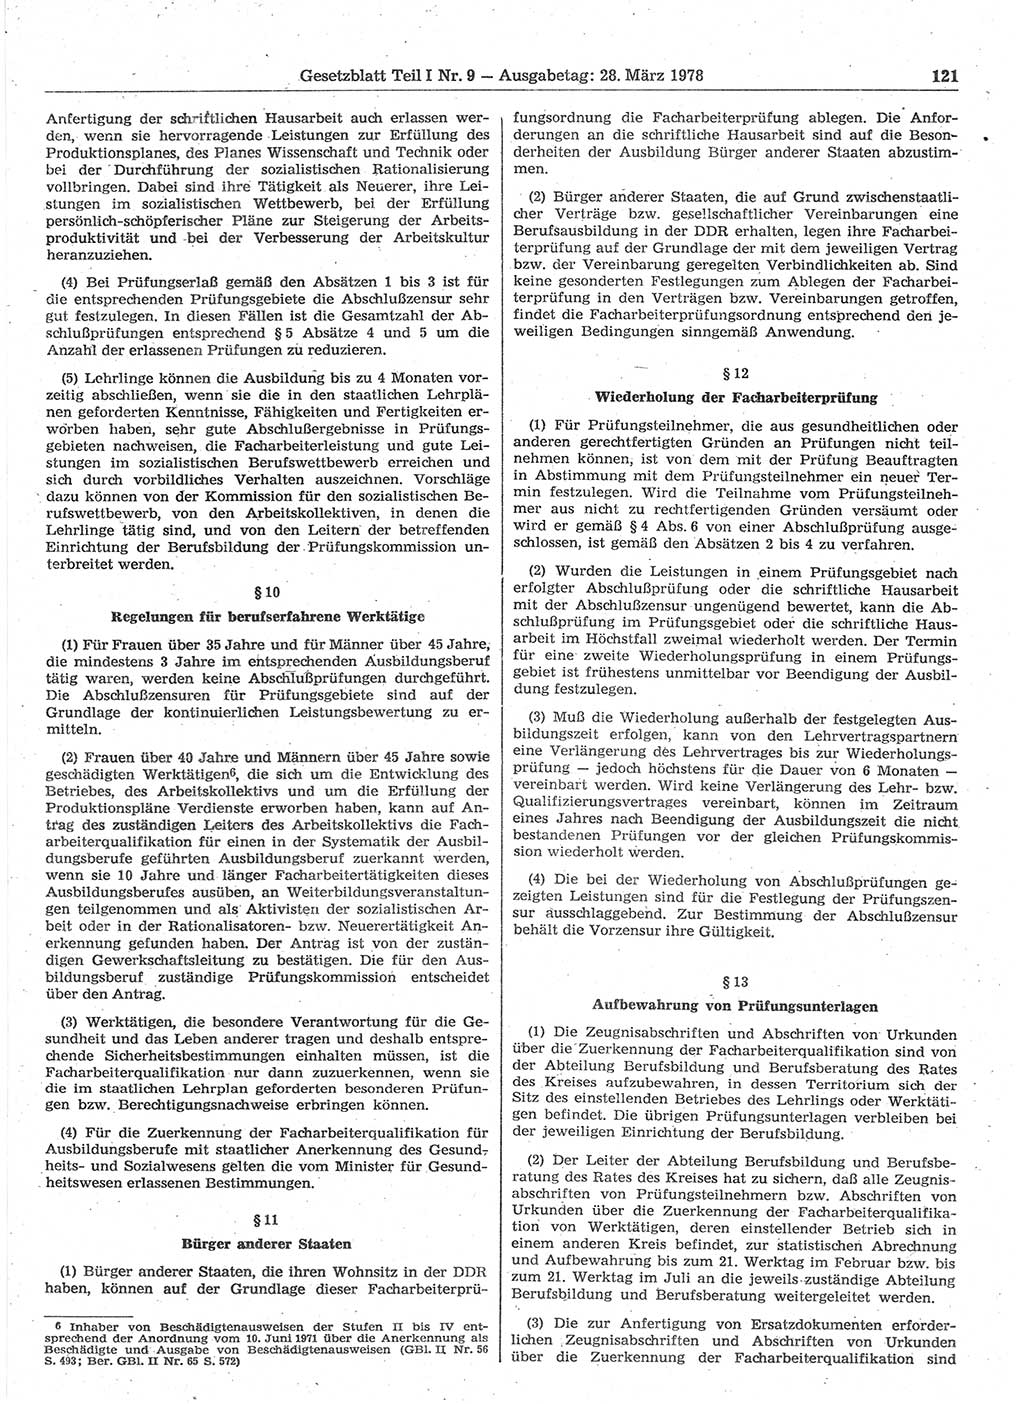 Gesetzblatt (GBl.) der Deutschen Demokratischen Republik (DDR) Teil Ⅰ 1978, Seite 121 (GBl. DDR Ⅰ 1978, S. 121)